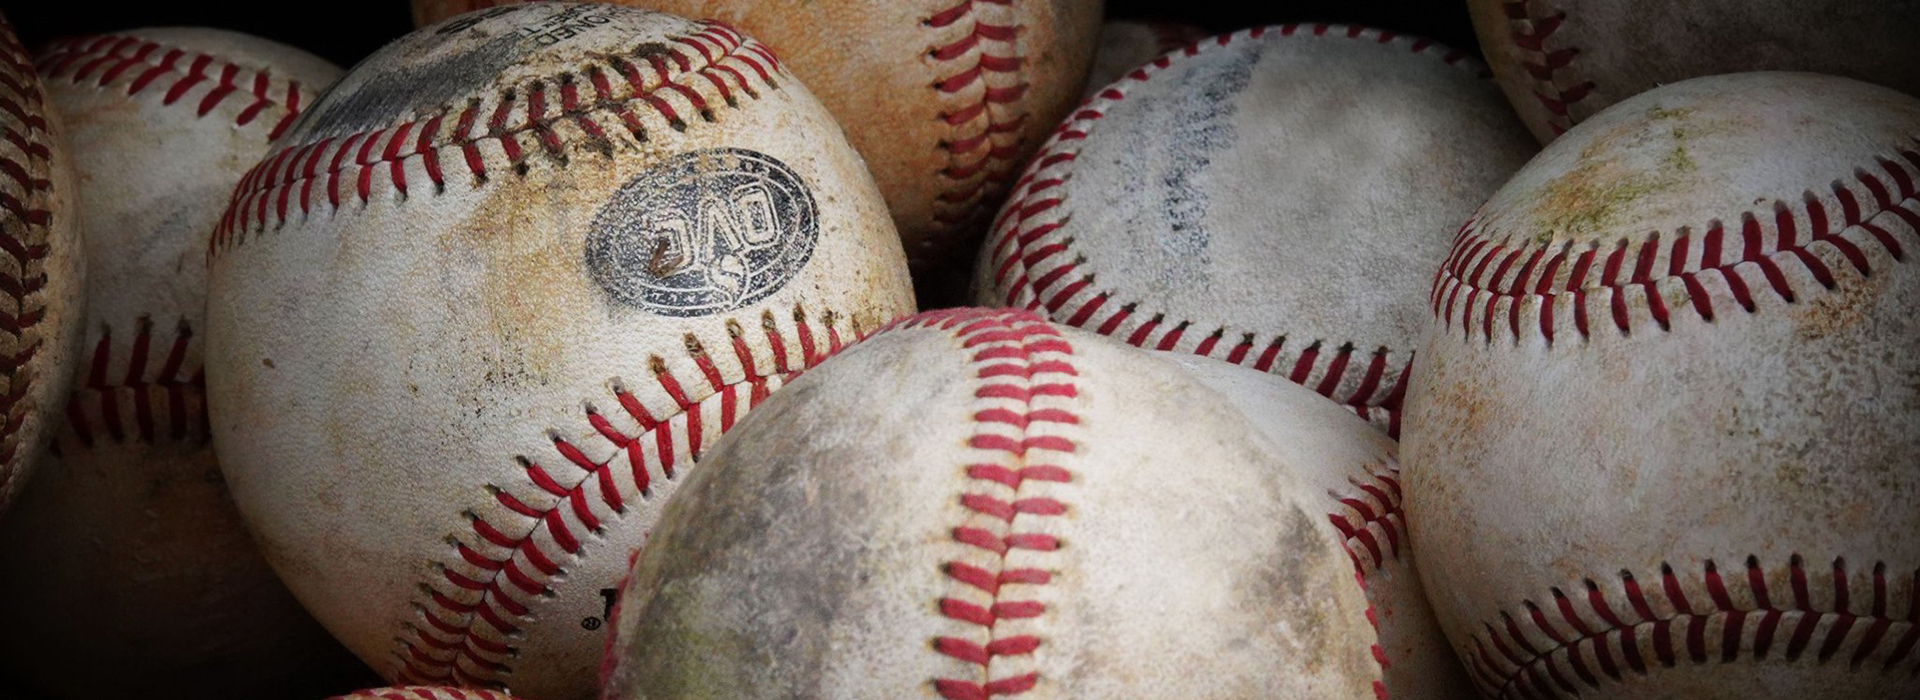 Tech baseball game vs. Auburn postponed to Wednesday